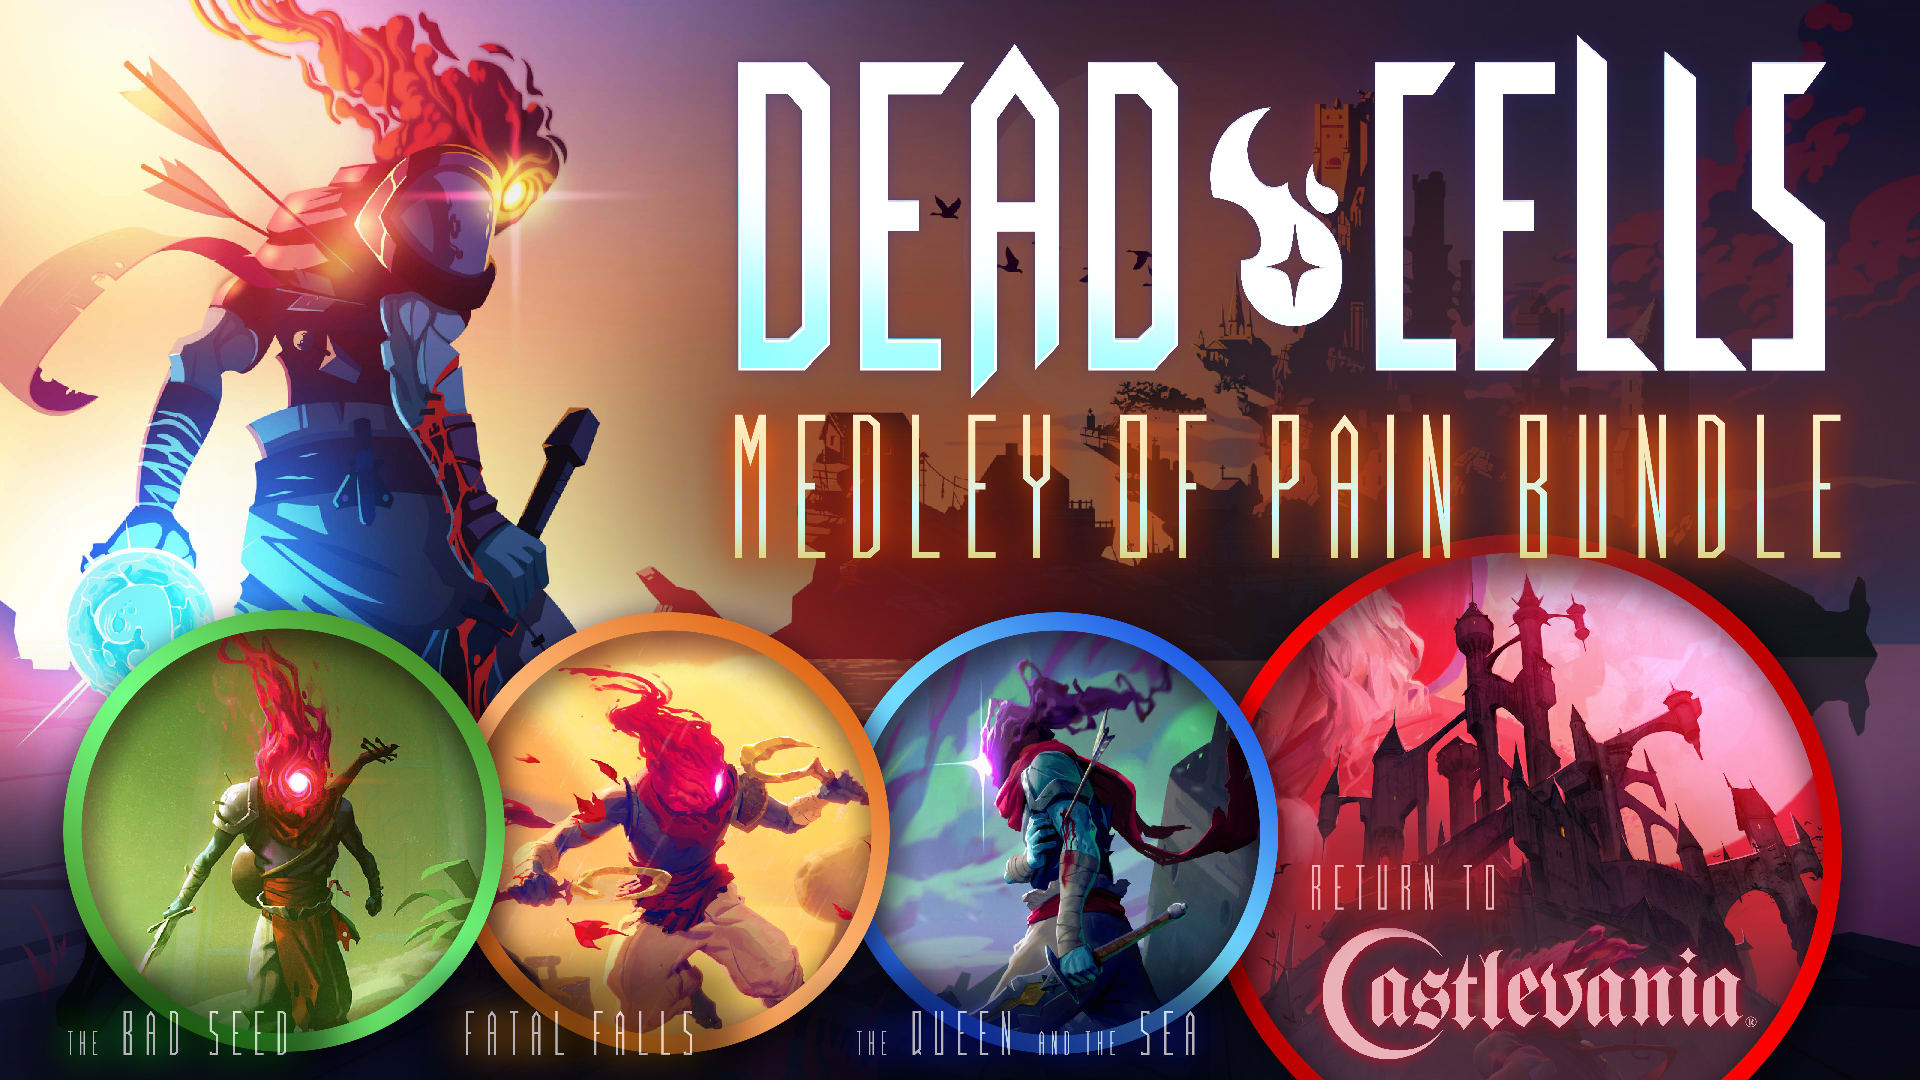 Dead Cells: Medley of Pain Bundle